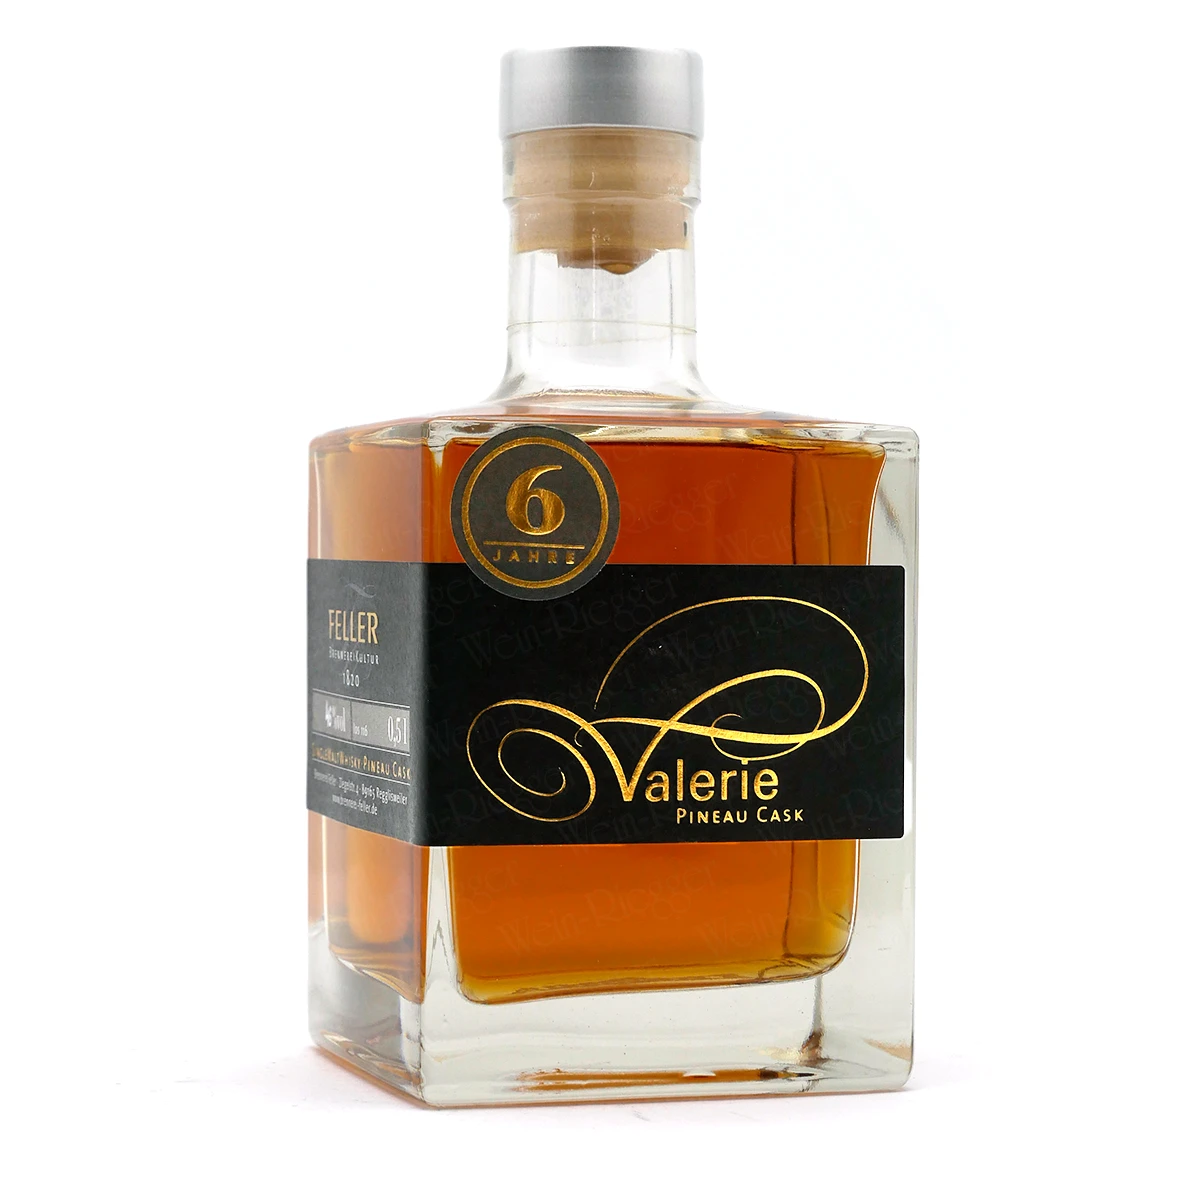 Valerie PINEAU 6 Jahre Single Malt Whisky | Feller